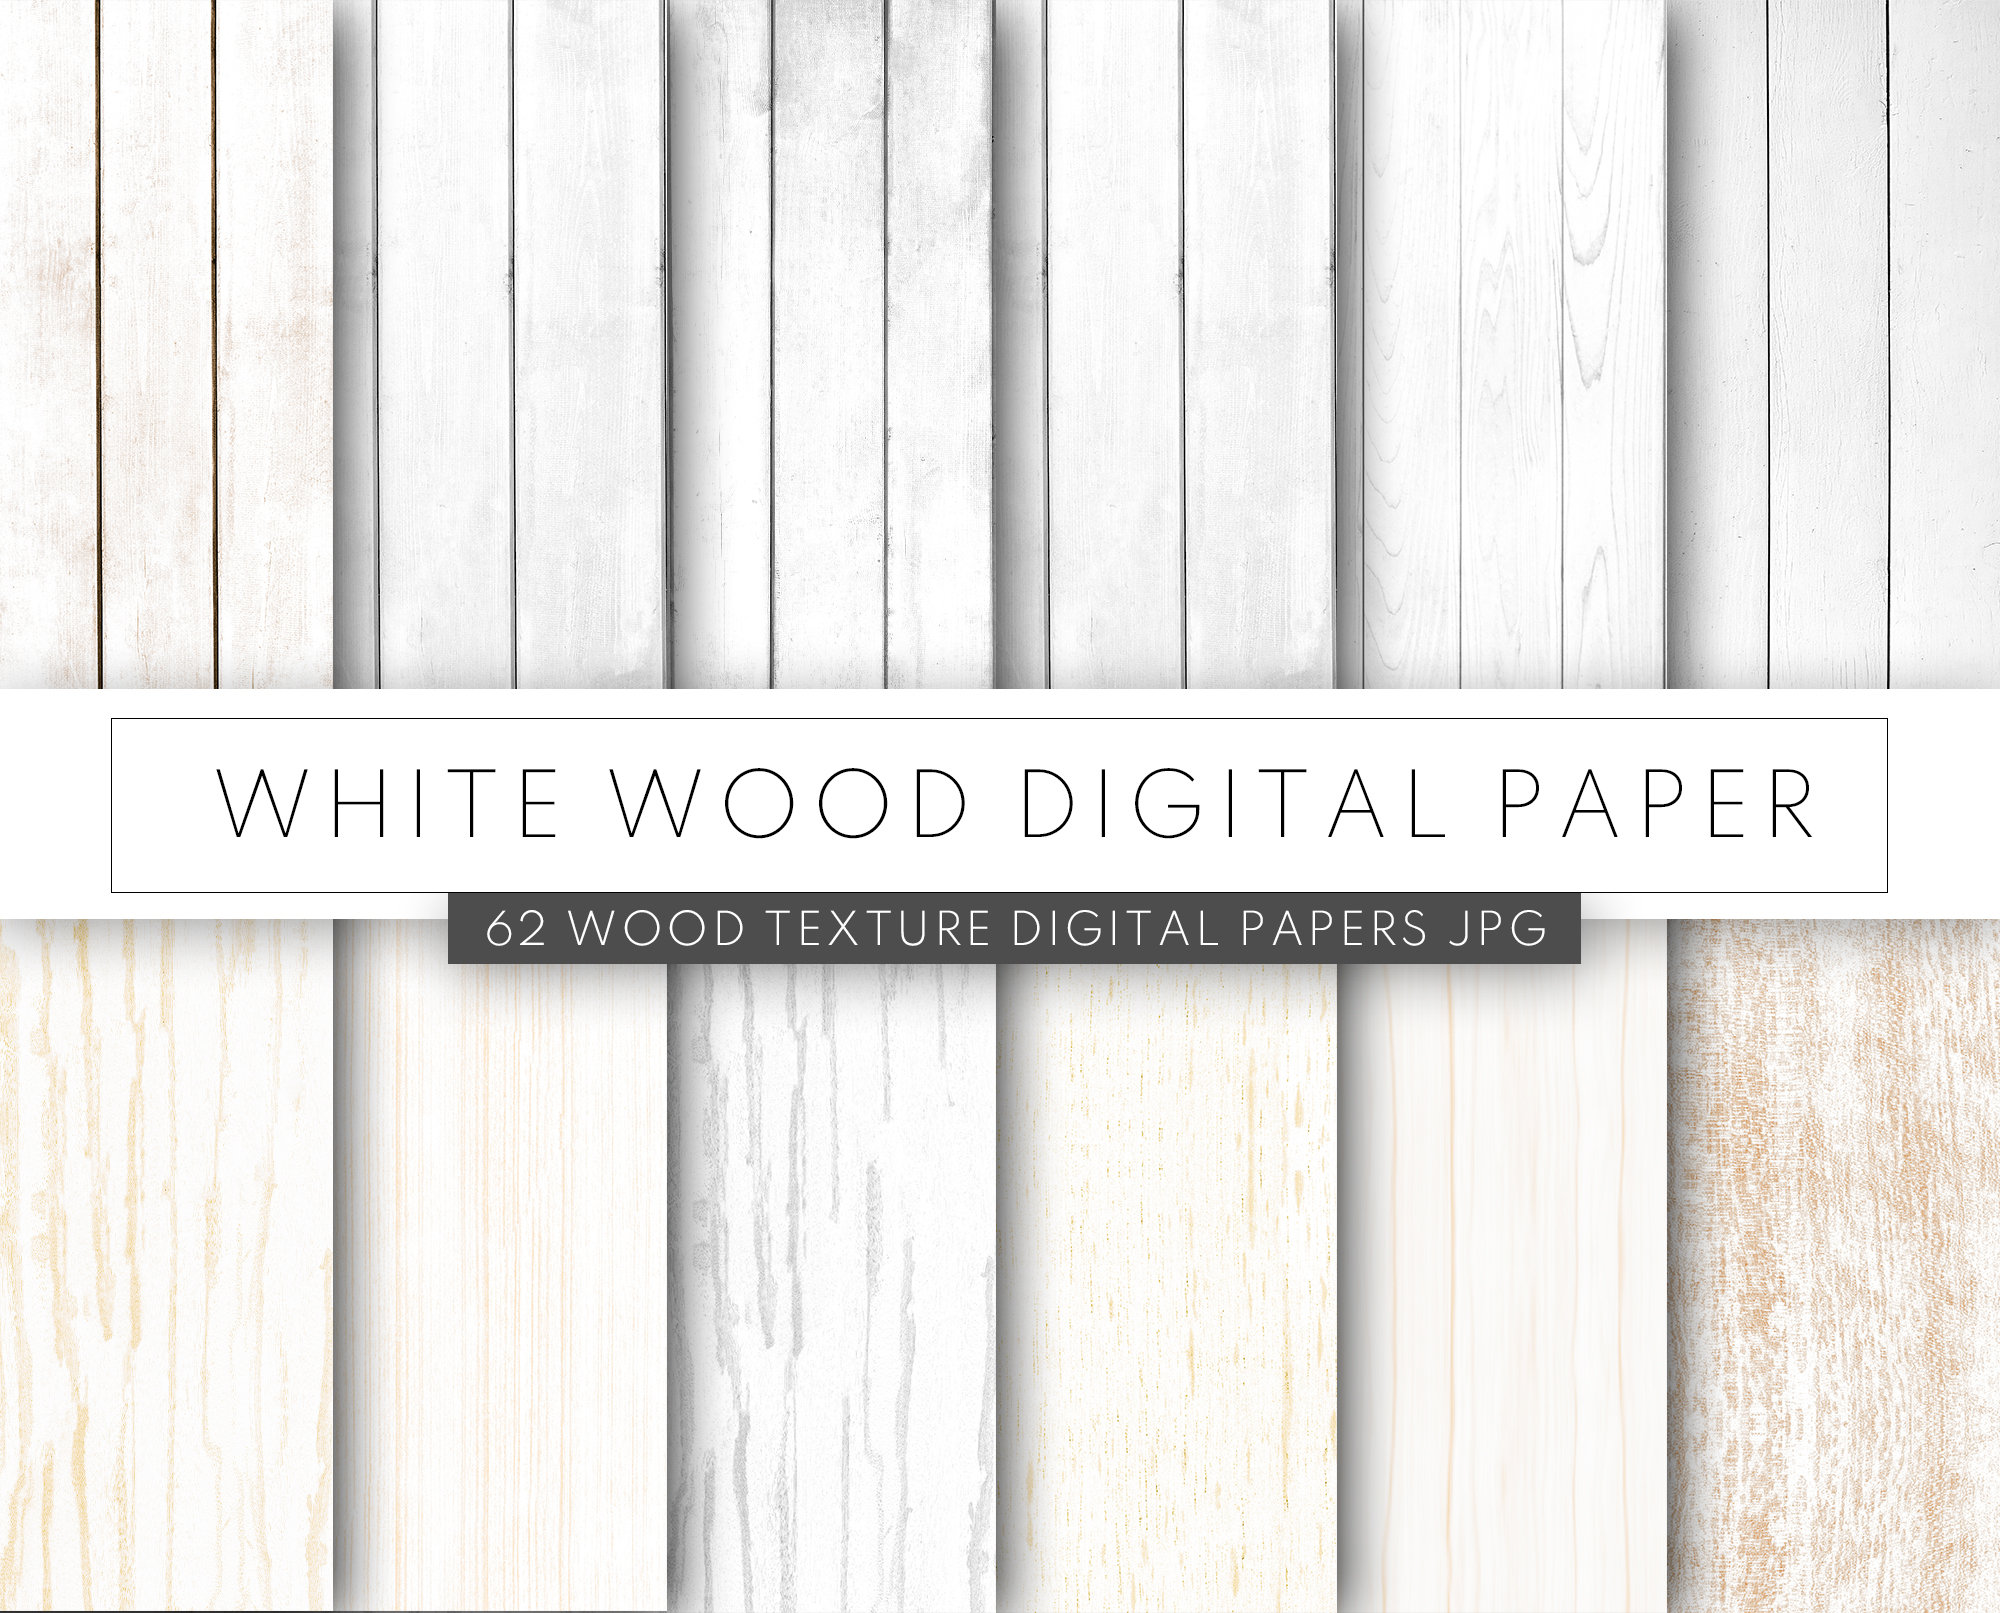 White Wooden Flooring Texture